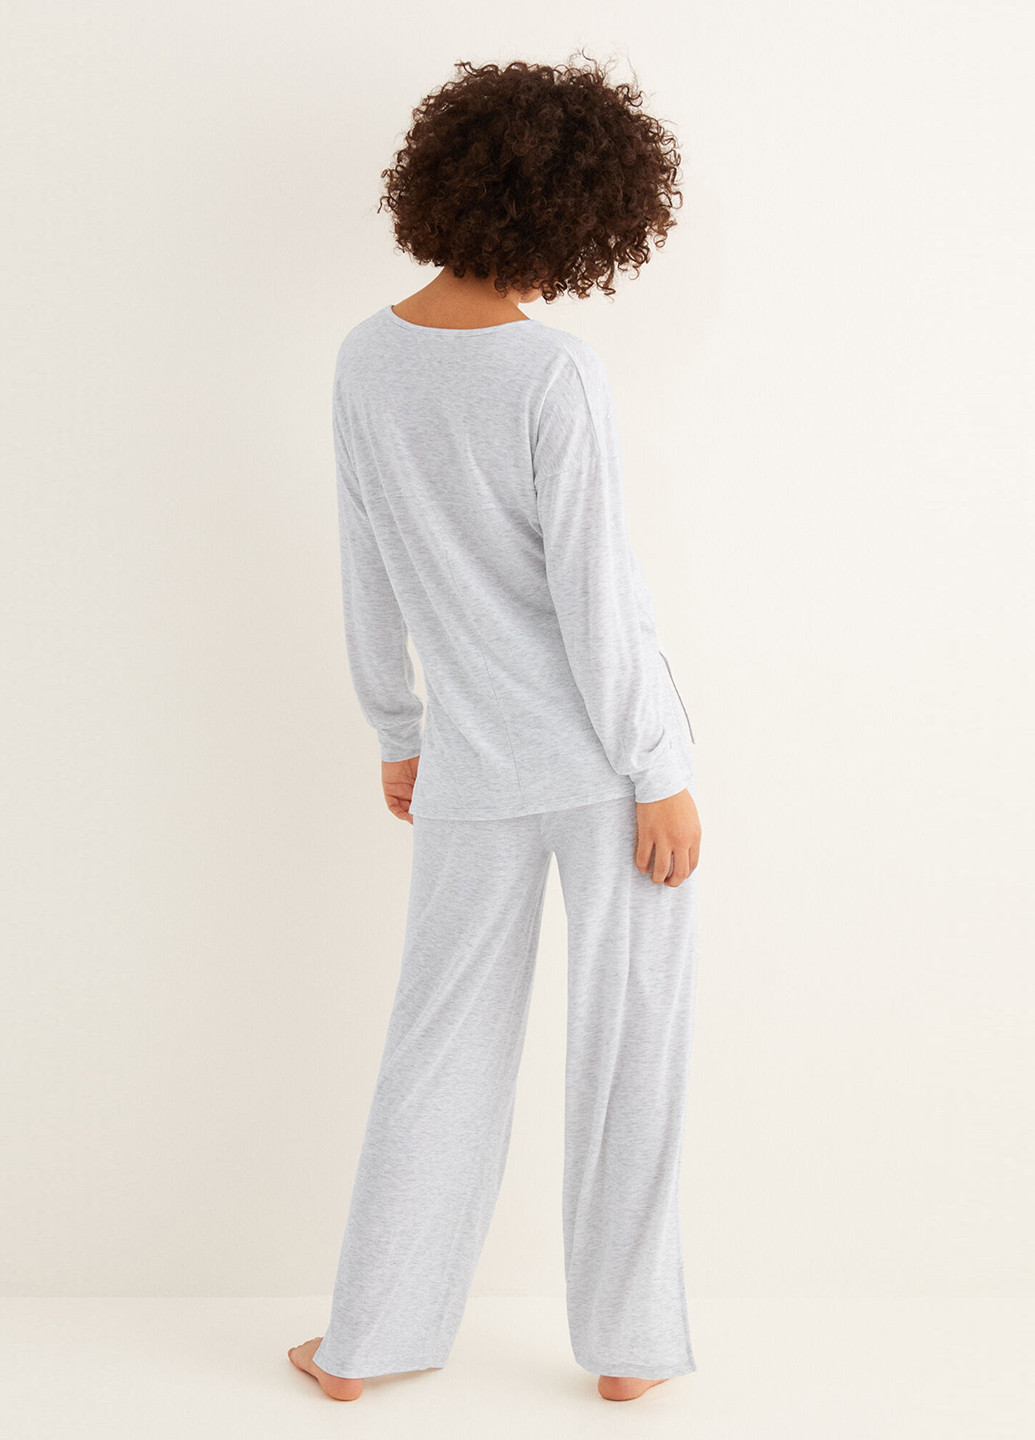 Светло-серая всесезон пижама (лонгслив, брюки) лонгслив + брюки Women'secret